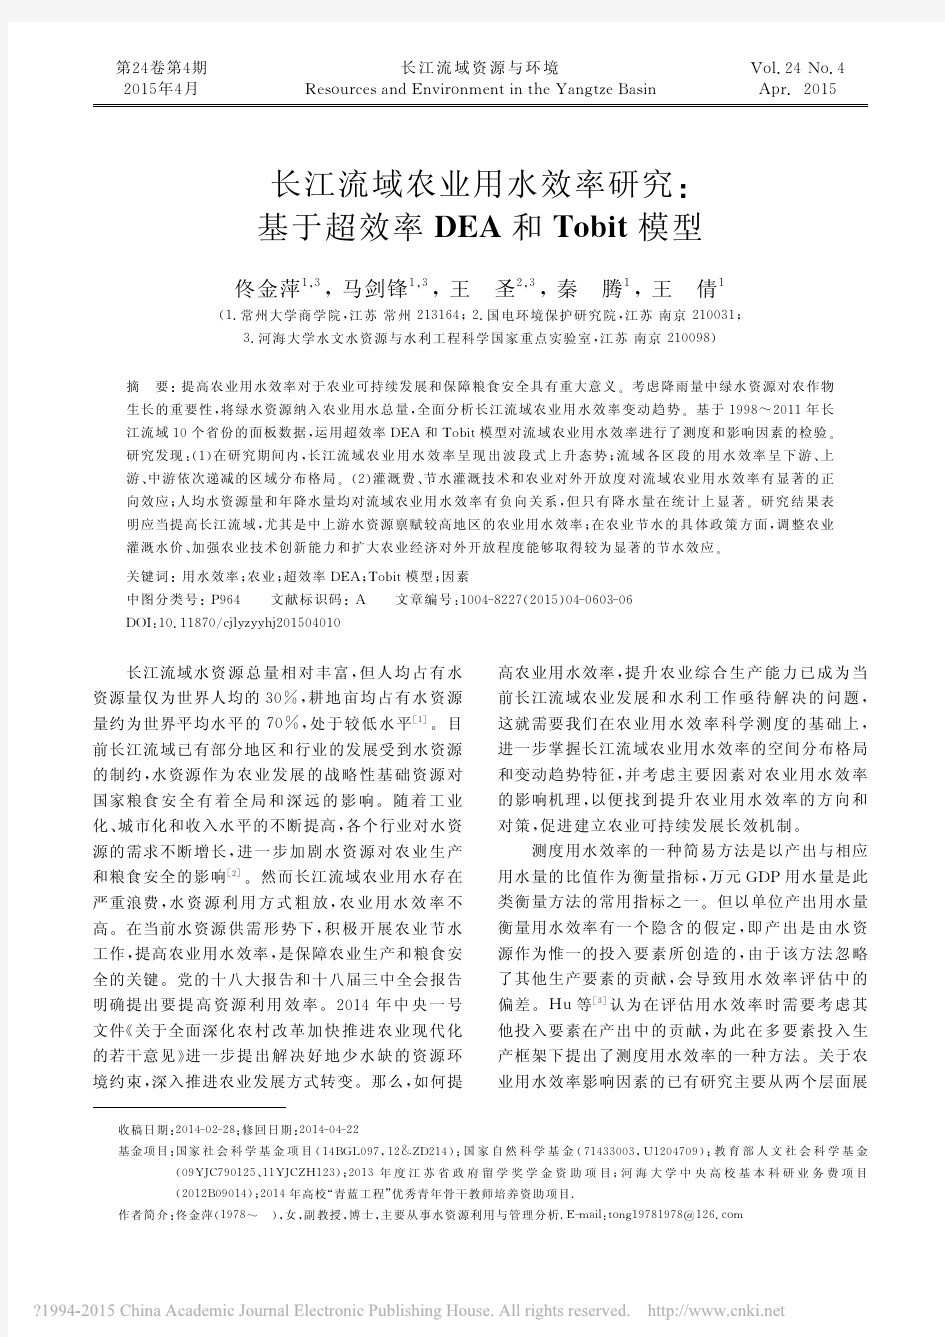 长江流域农业用水效率研究_基于超效率DEA和Tobit模型